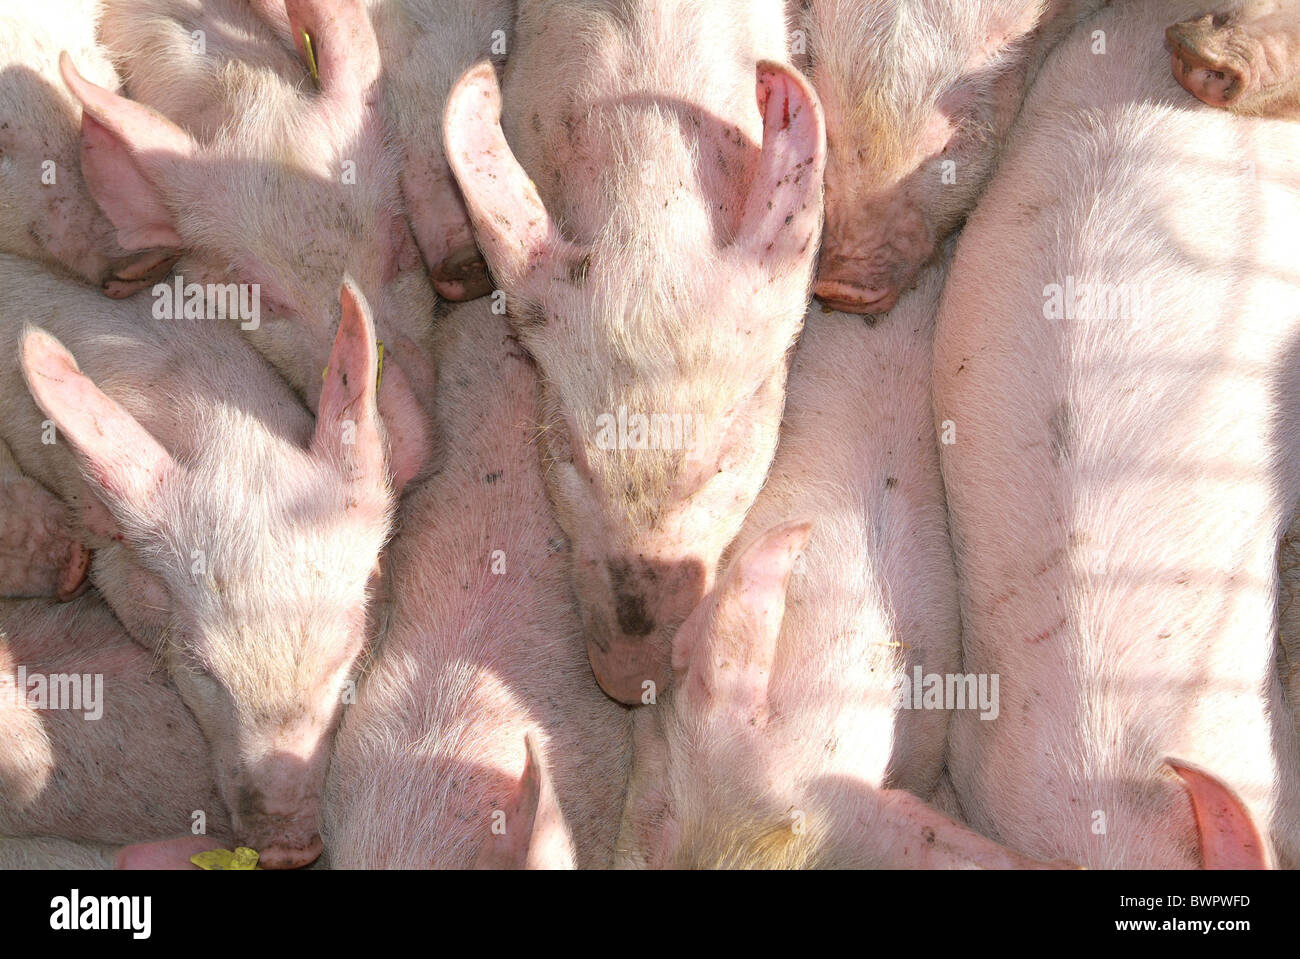 Los cerdos LECHONES Lechones agobiante escasez de tocino de cerdo granja agricultura La agricultura alimentos animales de cría animal pi Foto de stock